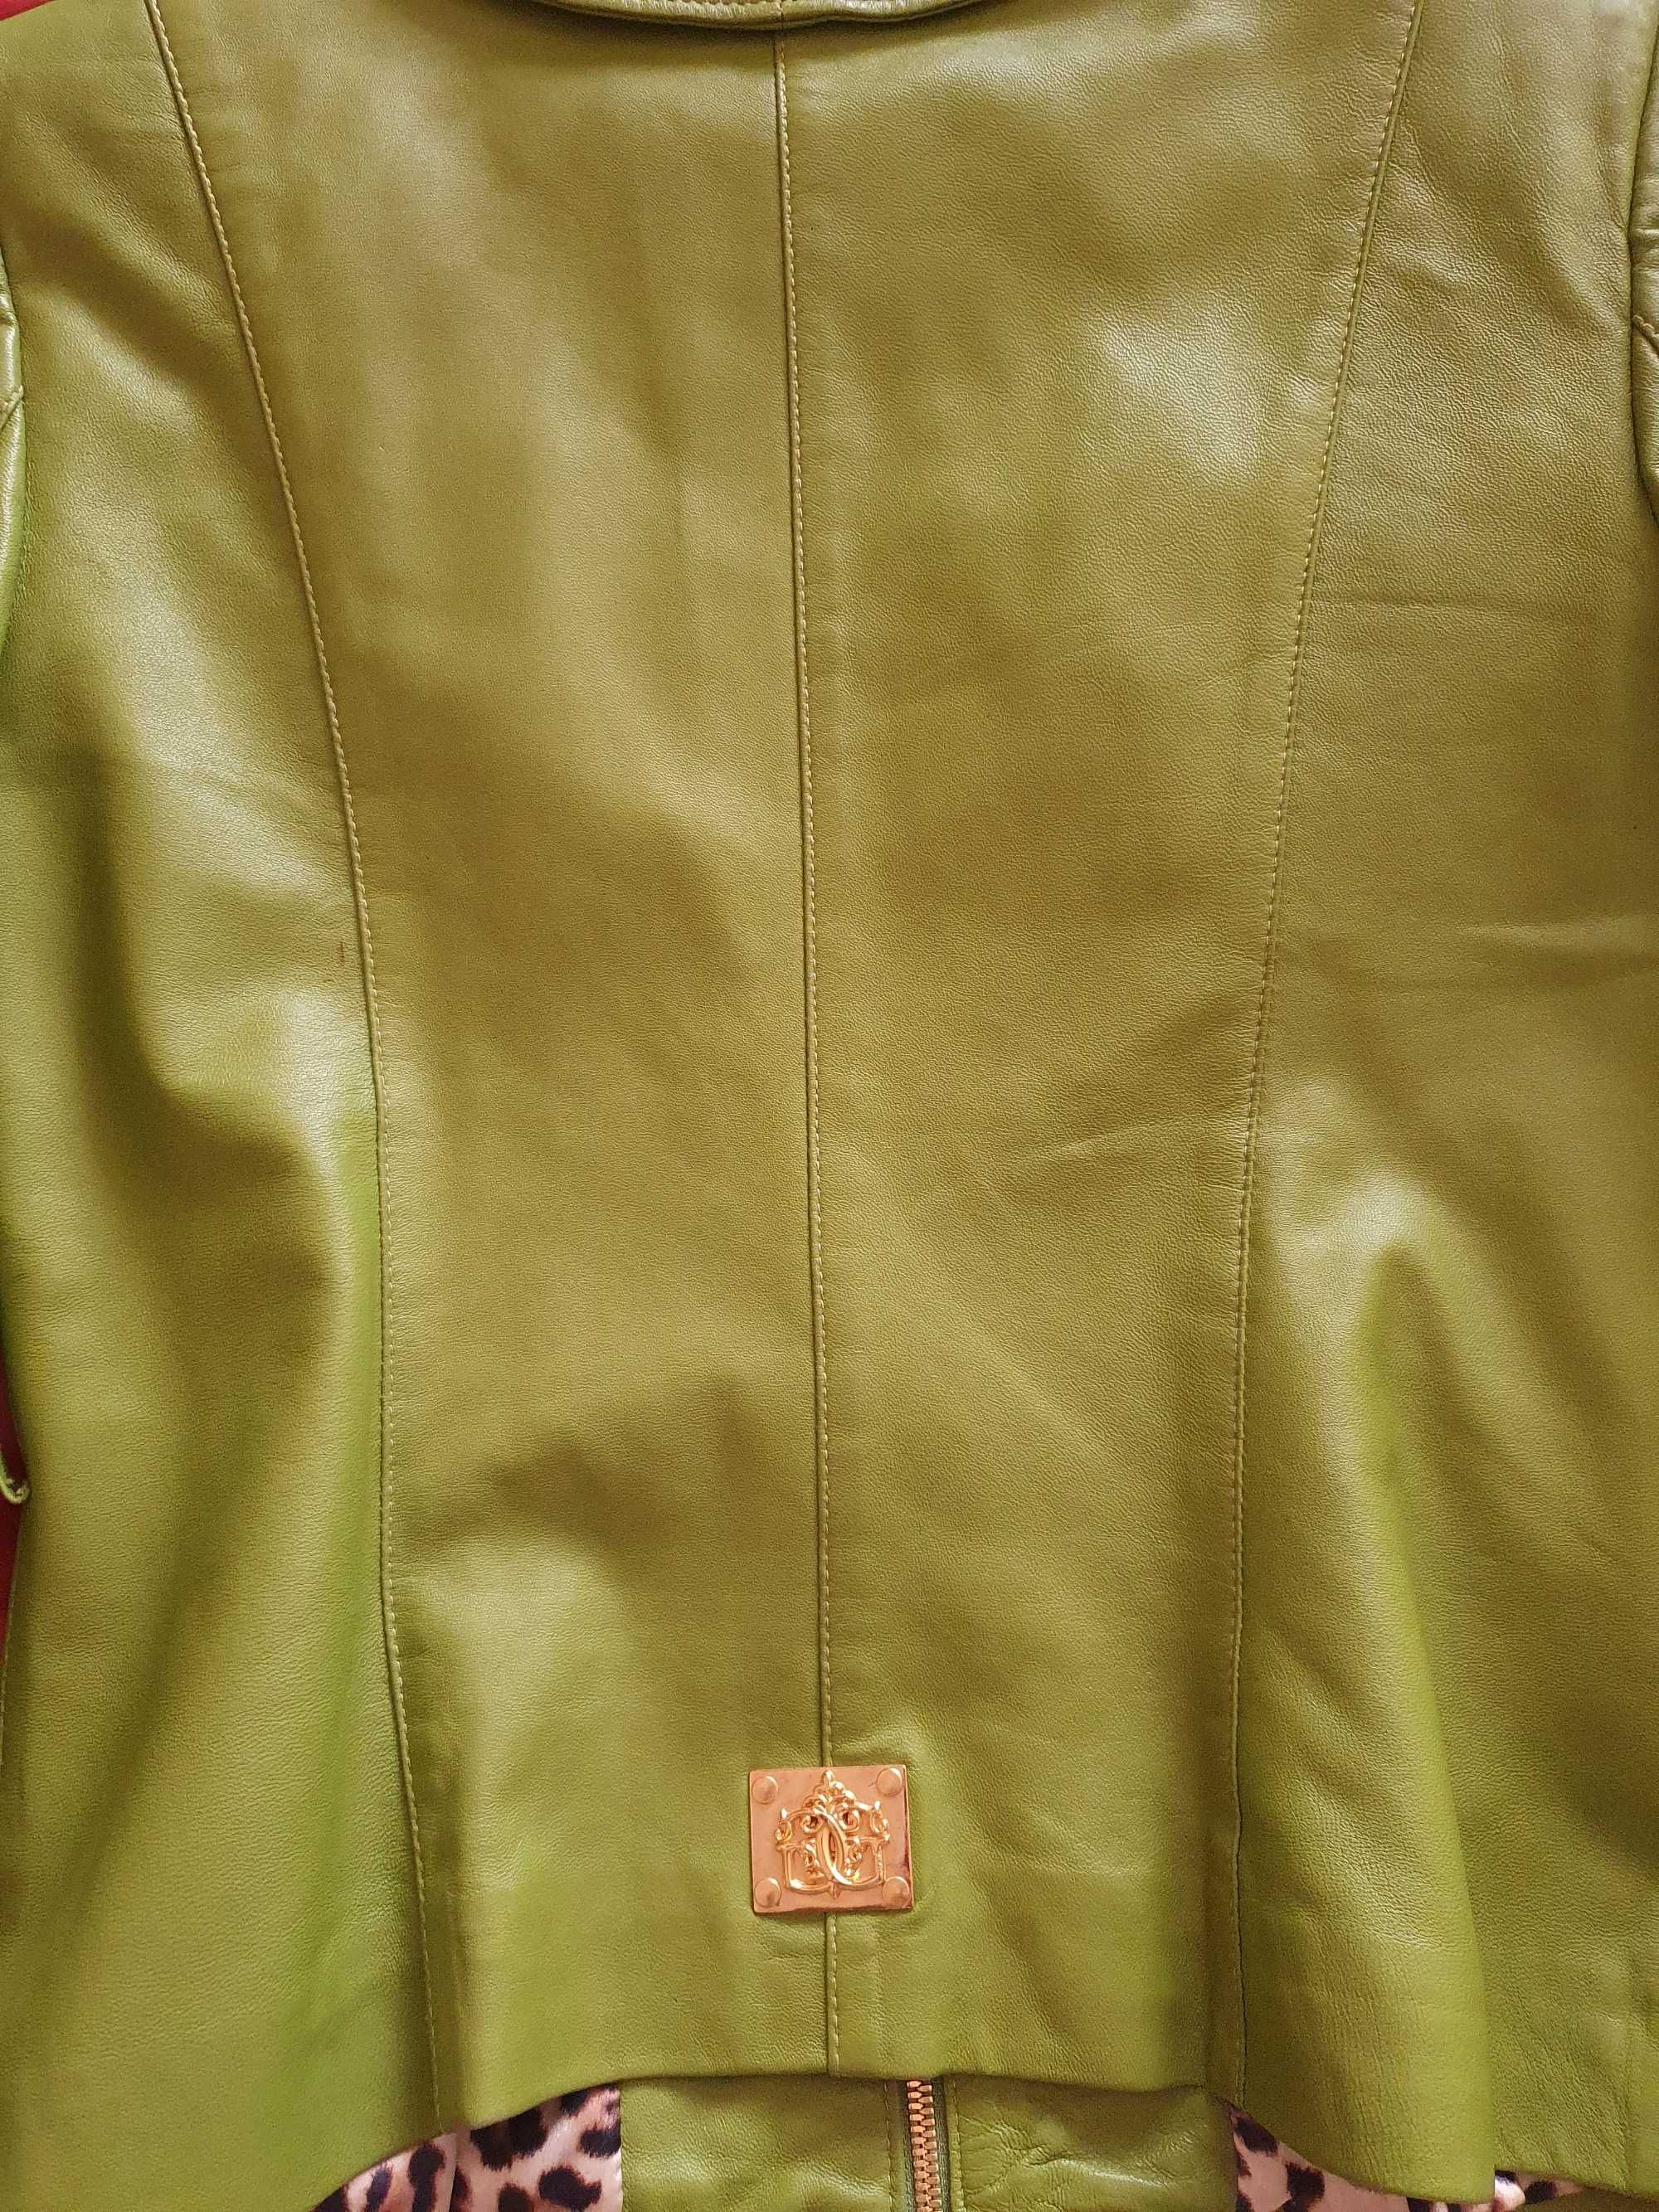 Кожаная куртка GIZIA (46-48р.,камни сваровски), 2 пояса, перчатки.